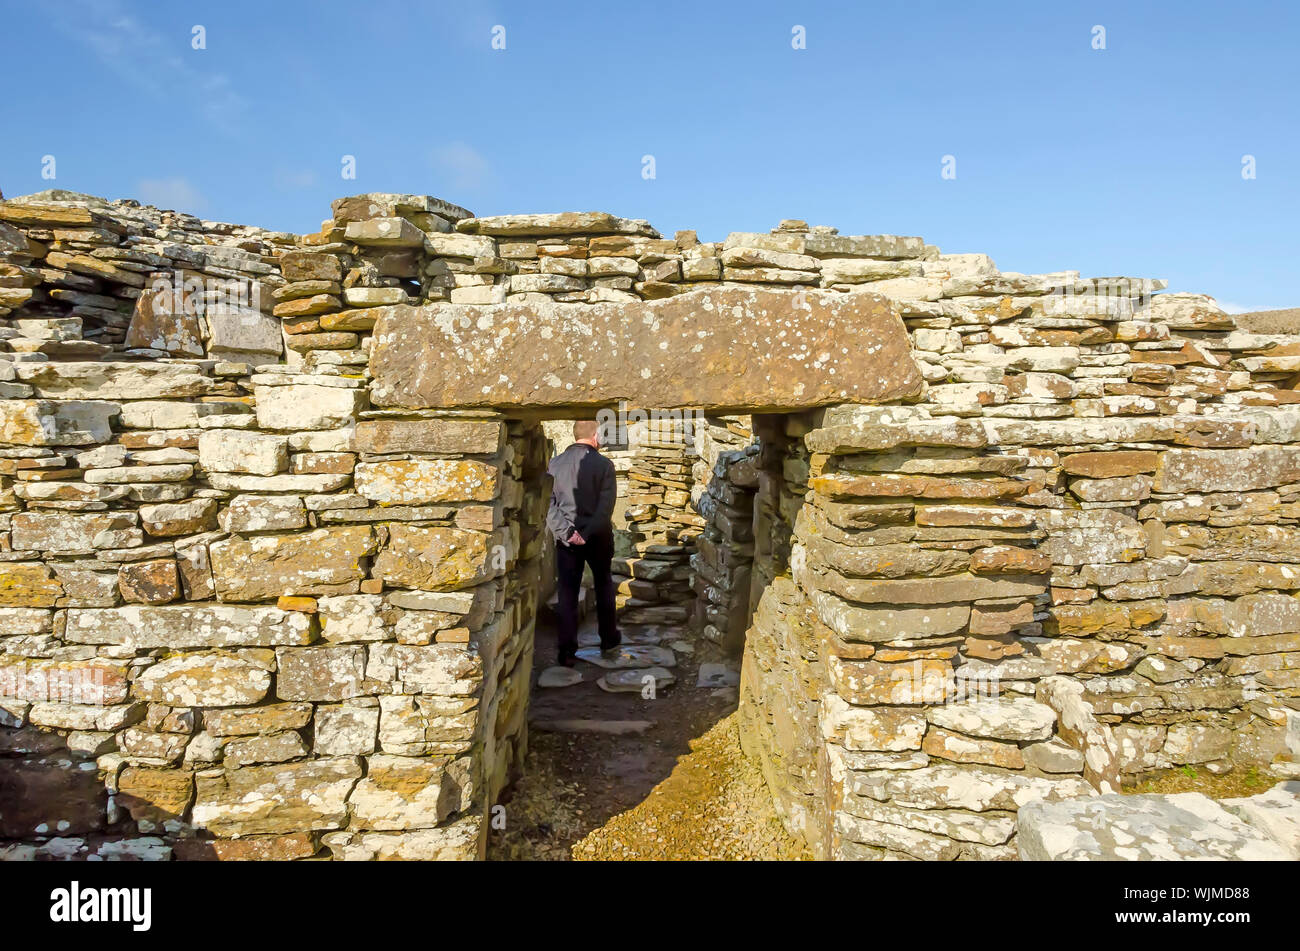 Broch de Gurness Entrée îles Orkney, en Écosse. Personne à l'intérieur pour la comparaison de taille. Un broch est un tour de l'âge du fer arrondis uniques à l'Écosse. Banque D'Images